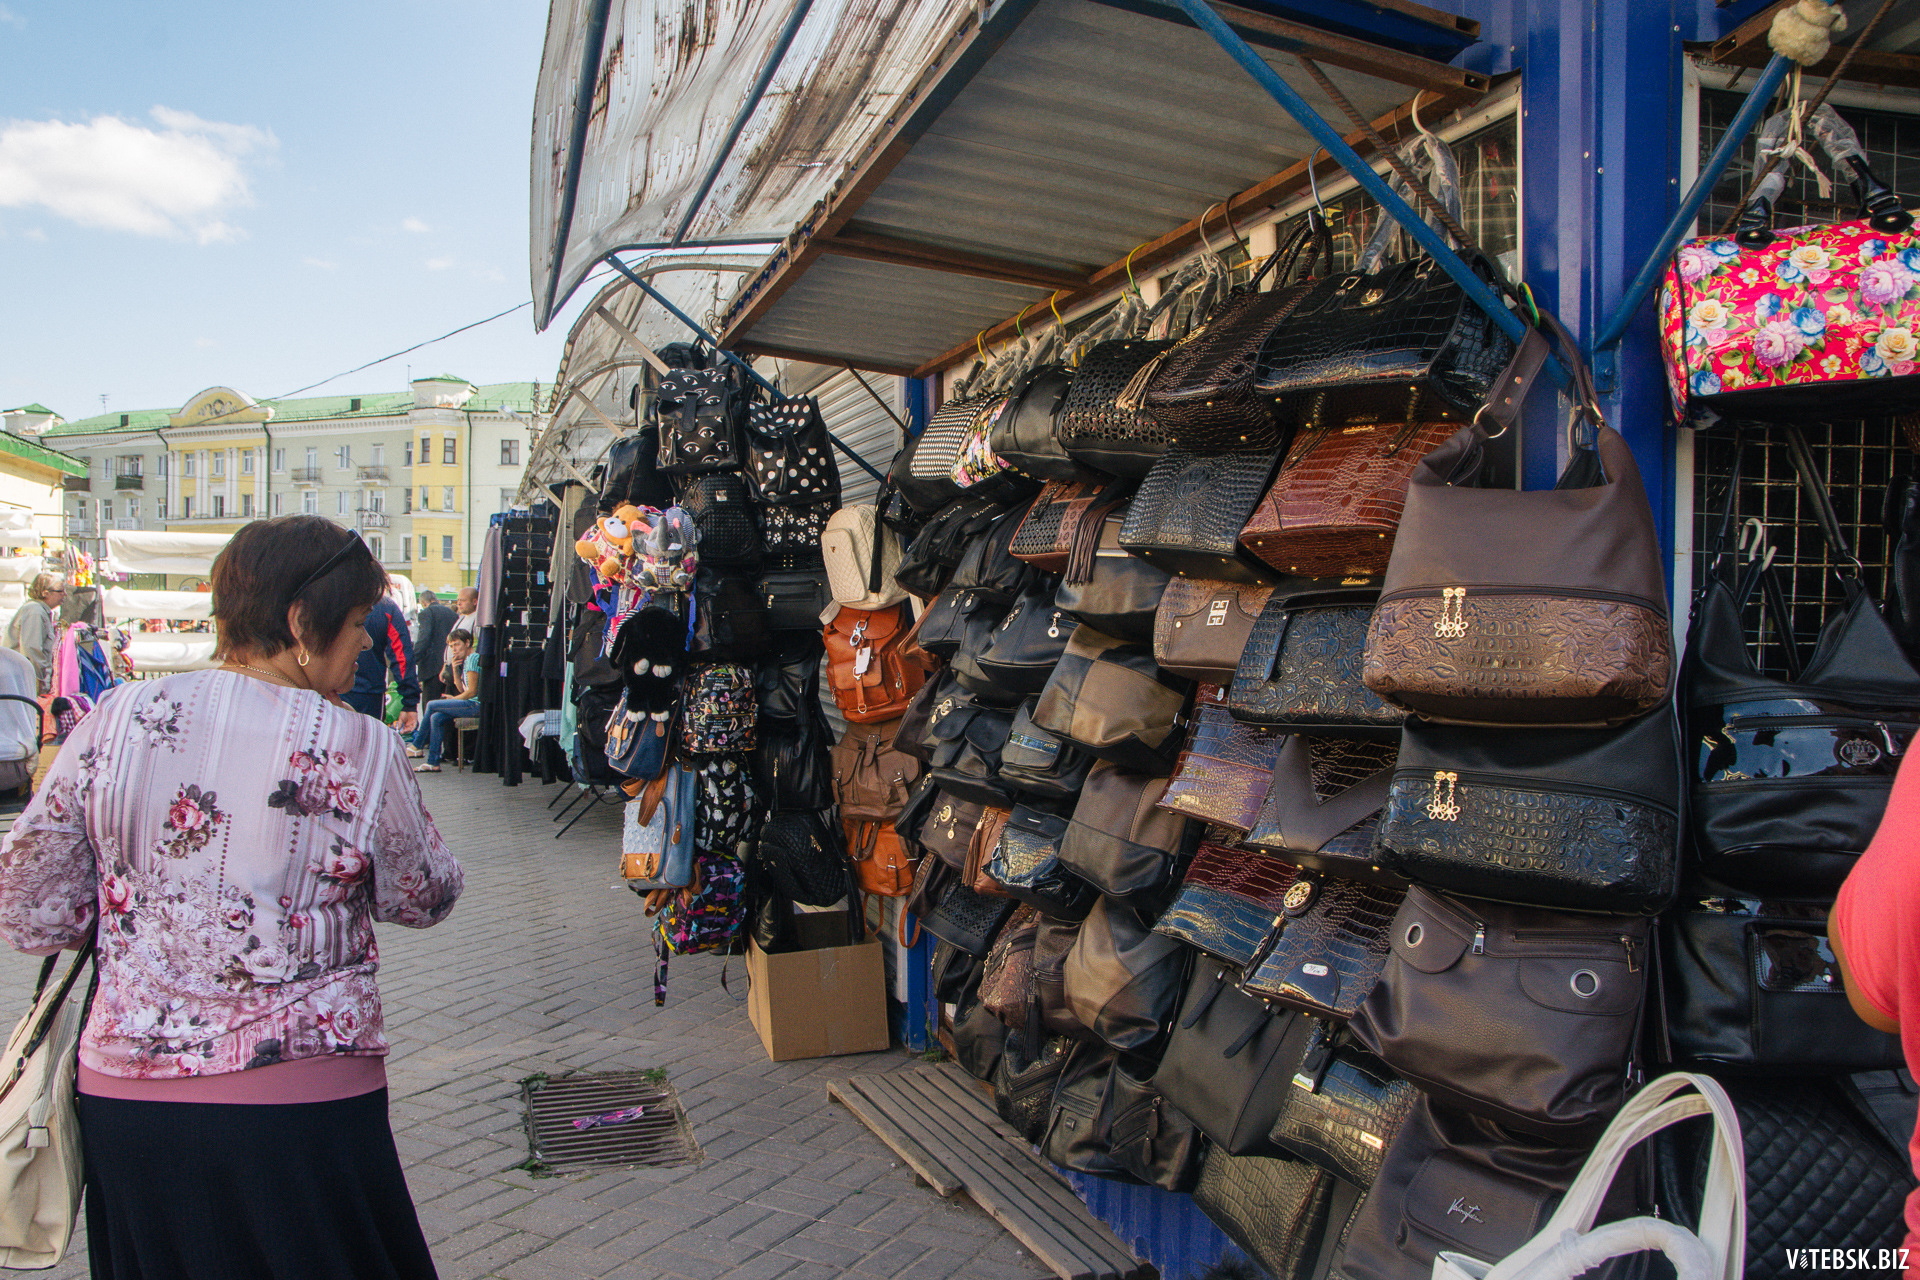 Вещевой рынок. Смоленский рынок в Витебске. Смоленск Центральный рынок. Дешевый вещевой рынок.